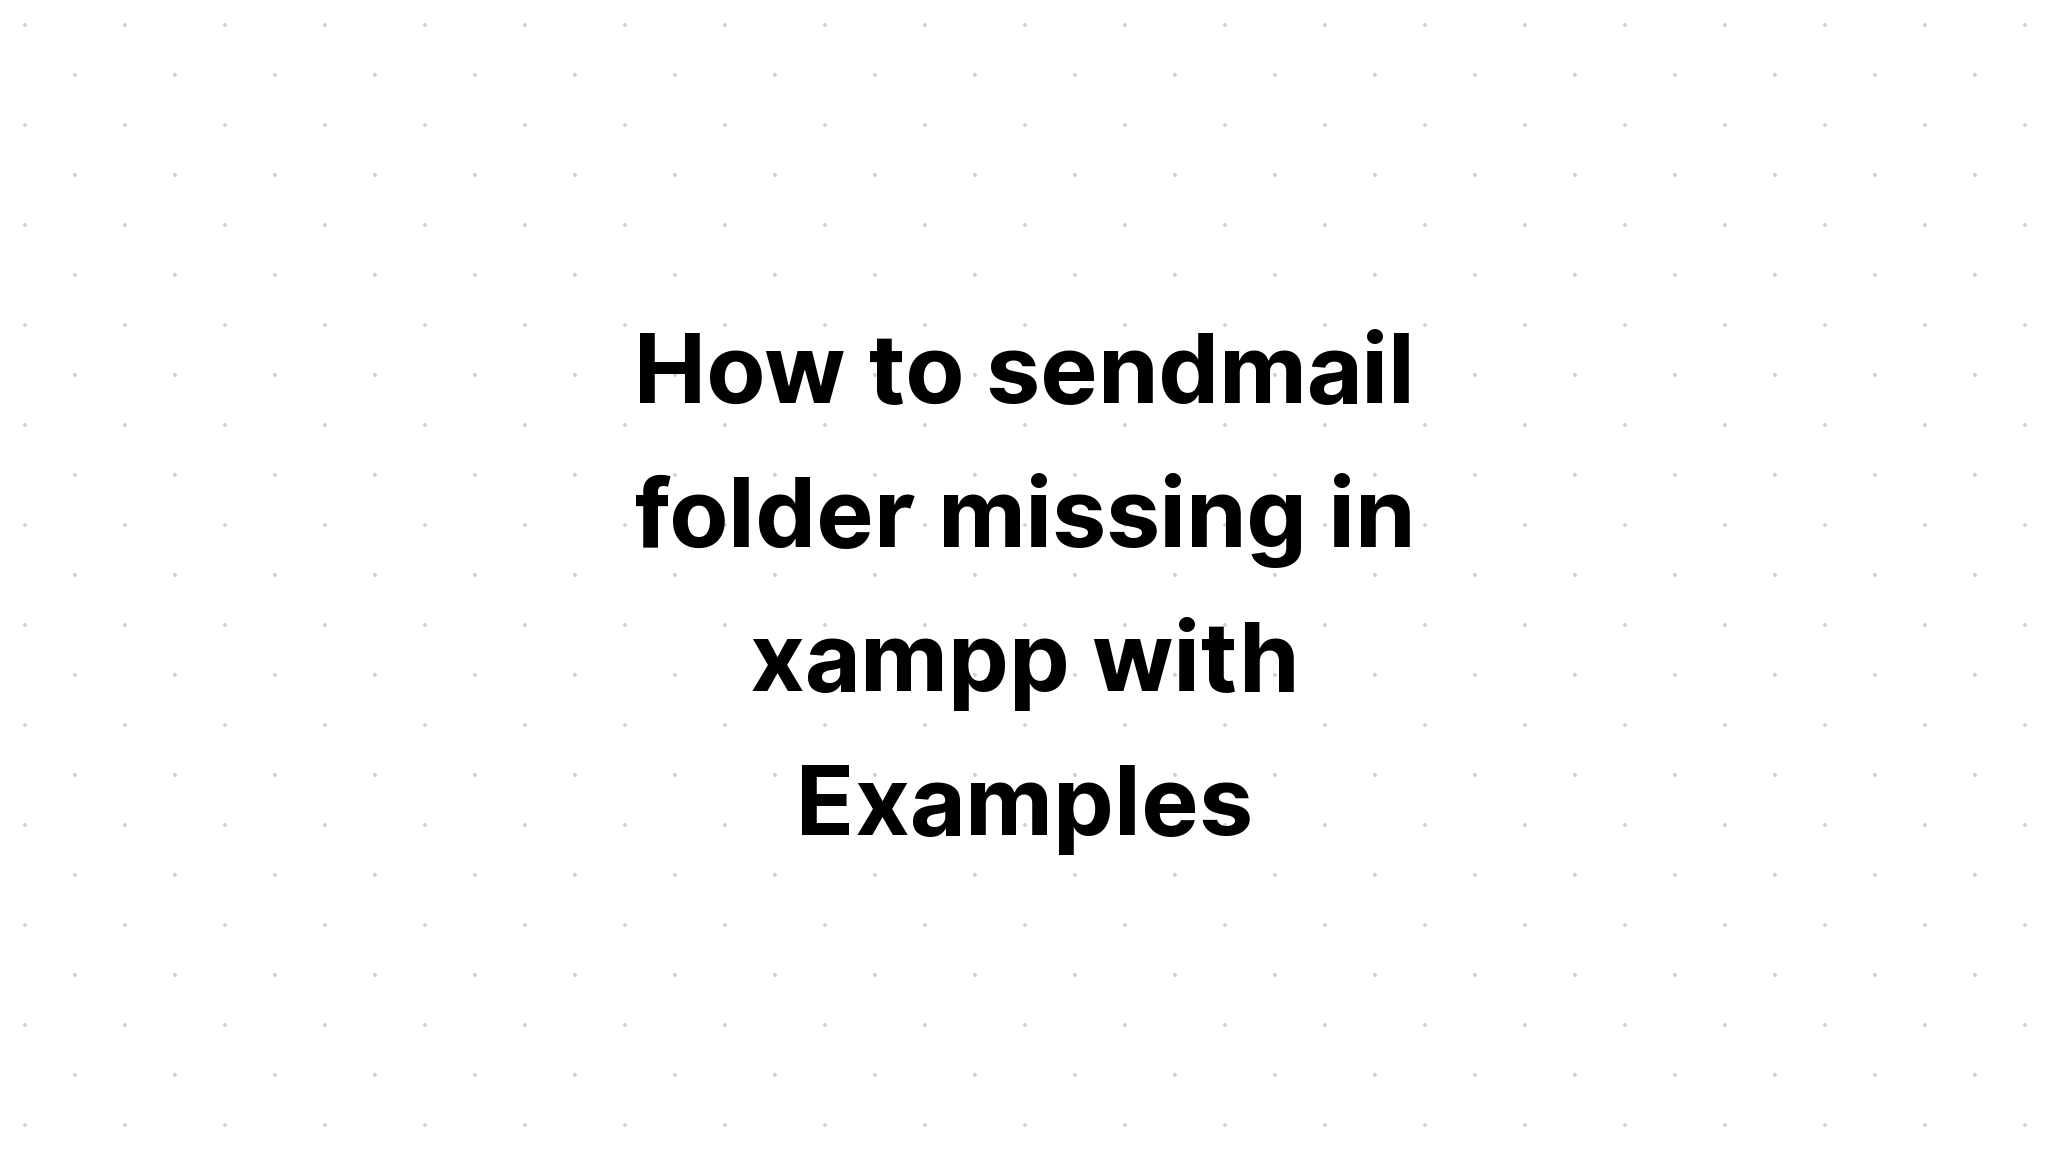 Cách gửi thư mục sendmail bị thiếu trong xampp với các ví dụ